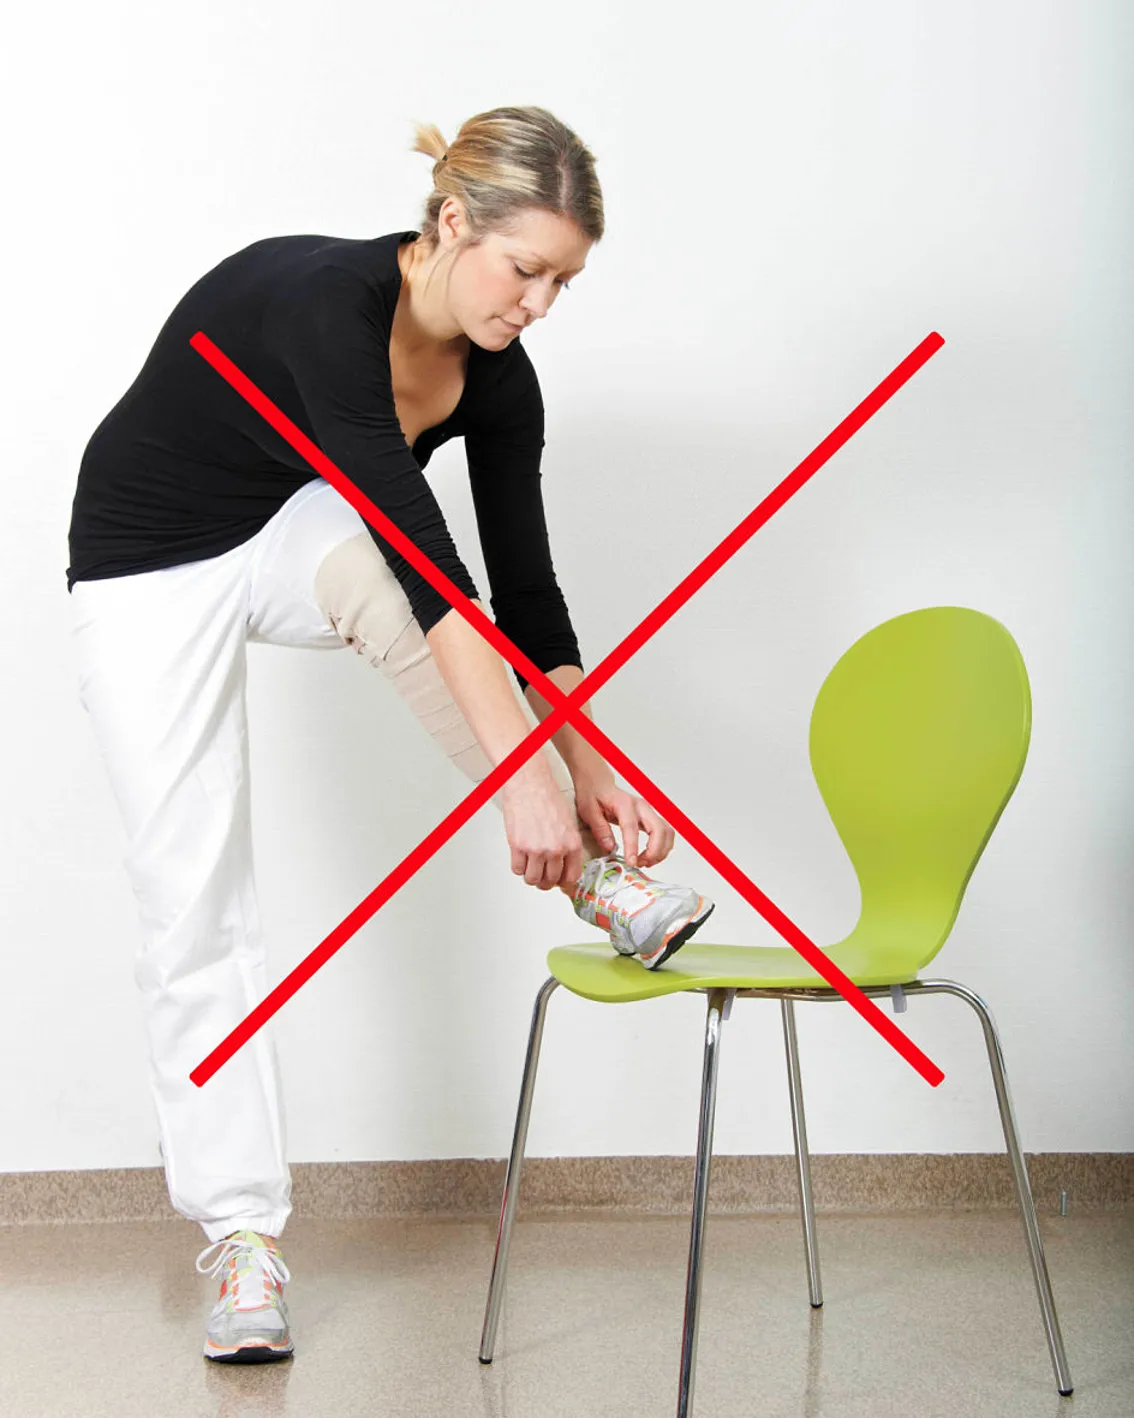 Pasient knyter skolisse stående med skoa plassert på en stol. Kneet peker inn mot midten. Skal unngås ved bakre tilgang. Foto.